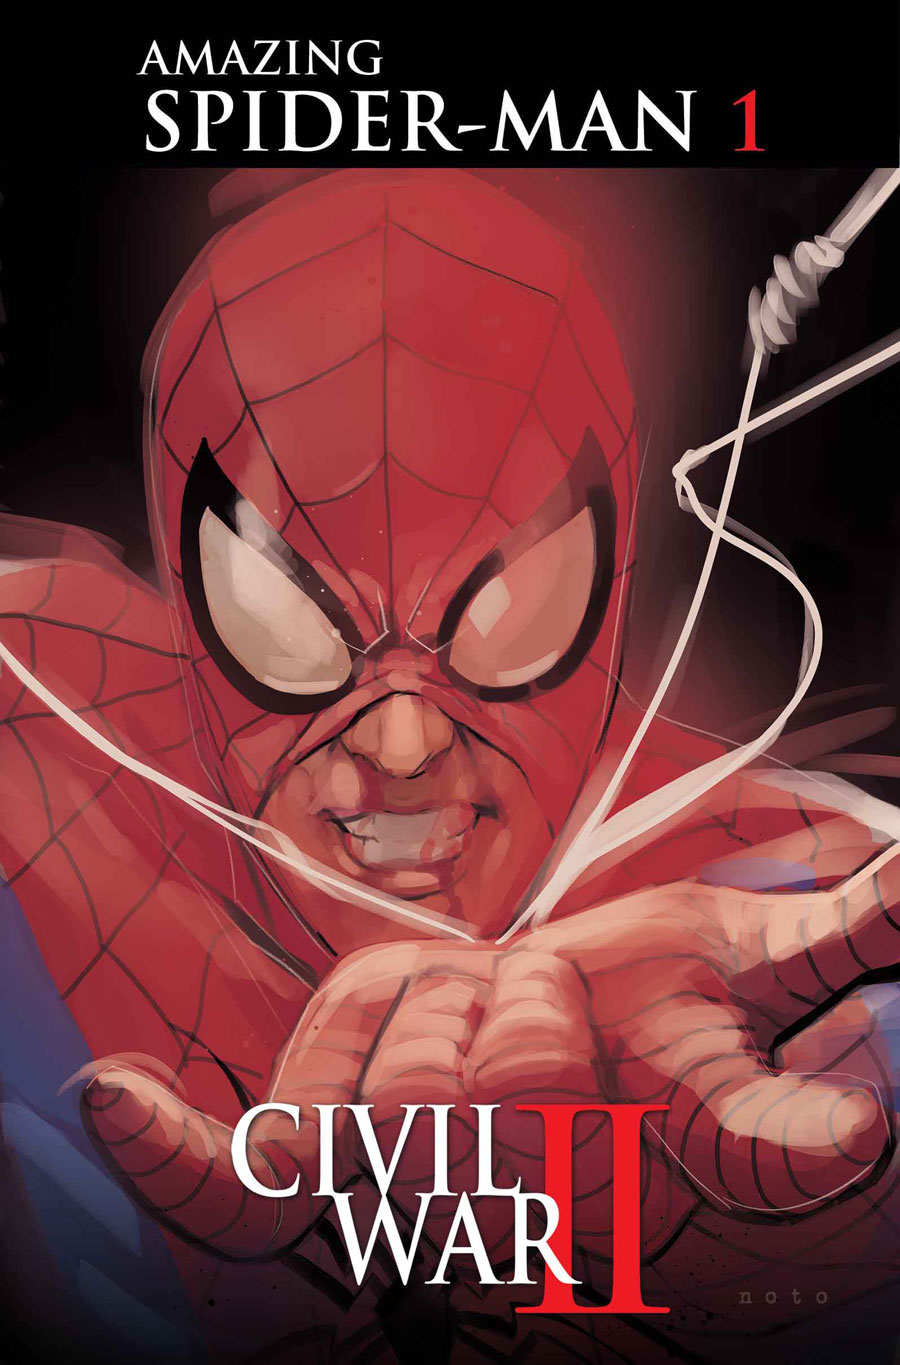 Civil War II: The Amazing Spider-Man